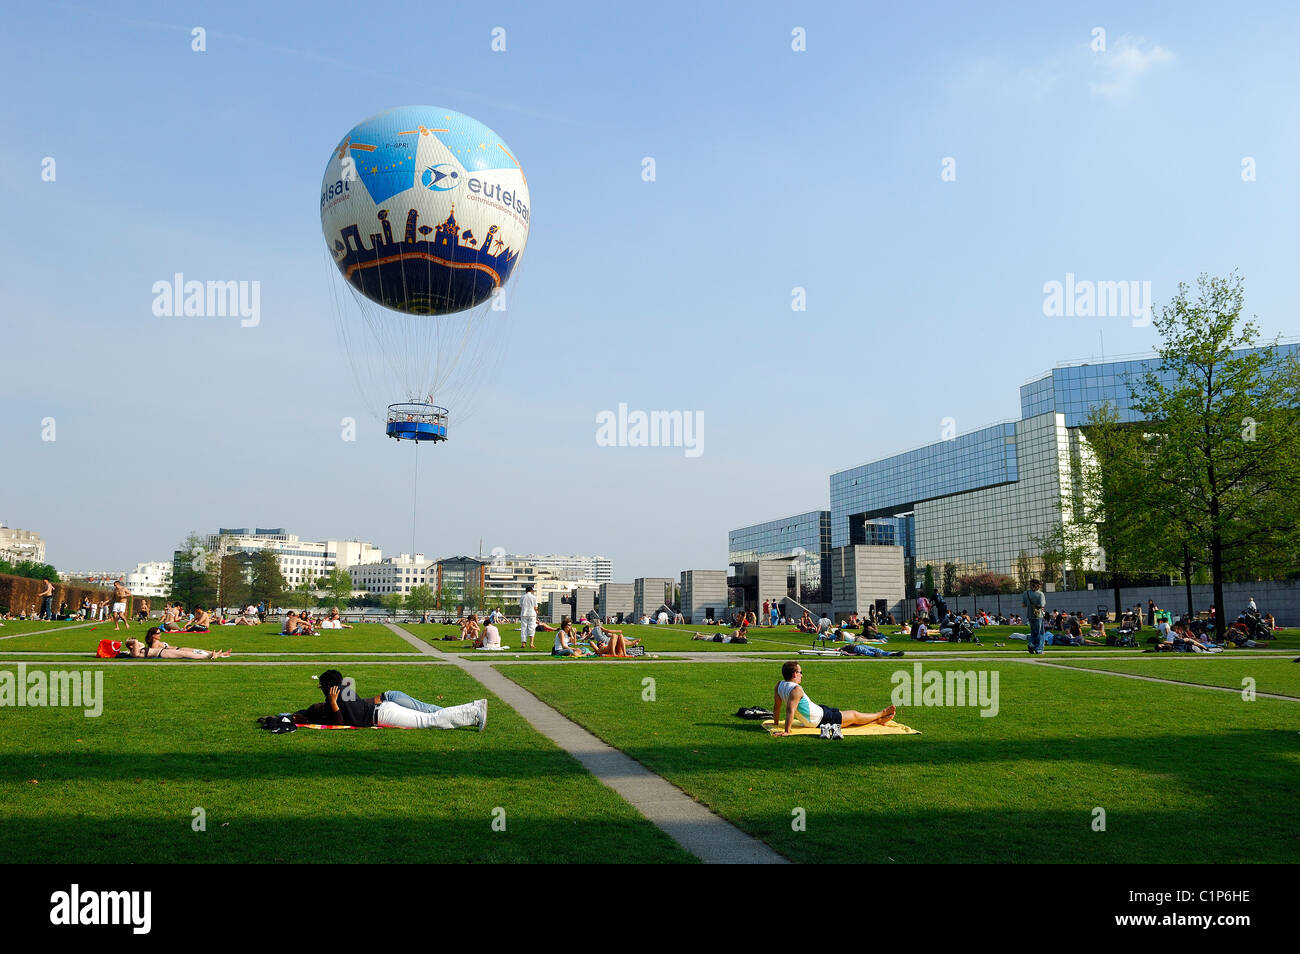 France, Paris, Parc Andre Citroen, Eutelsat hot air balloon Stock Photo -  Alamy